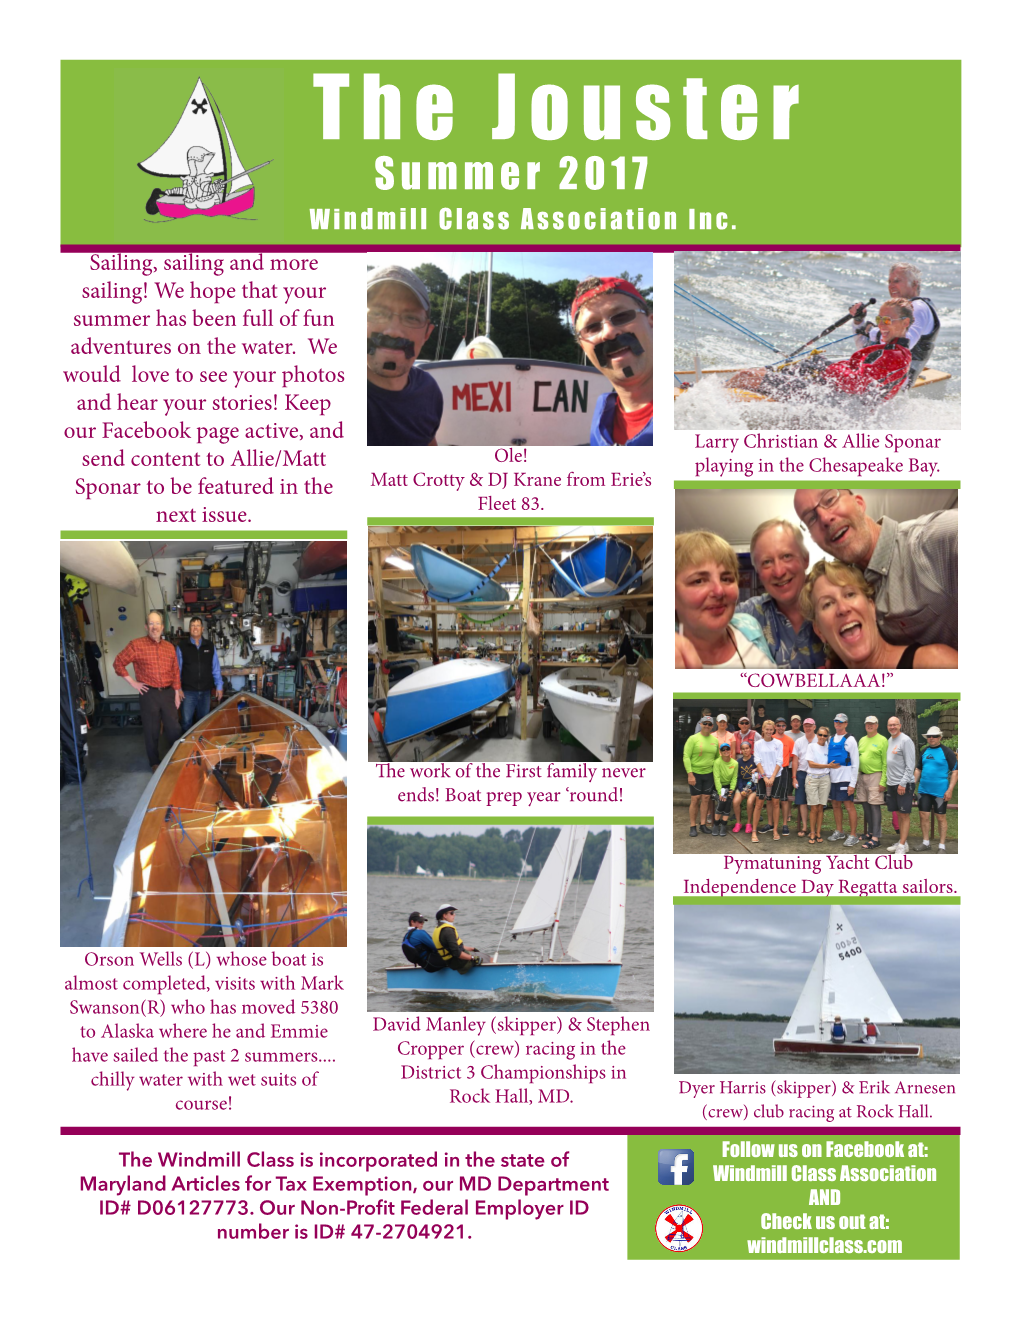 The Jouster Summer 2017 Windmill Class Association Inc